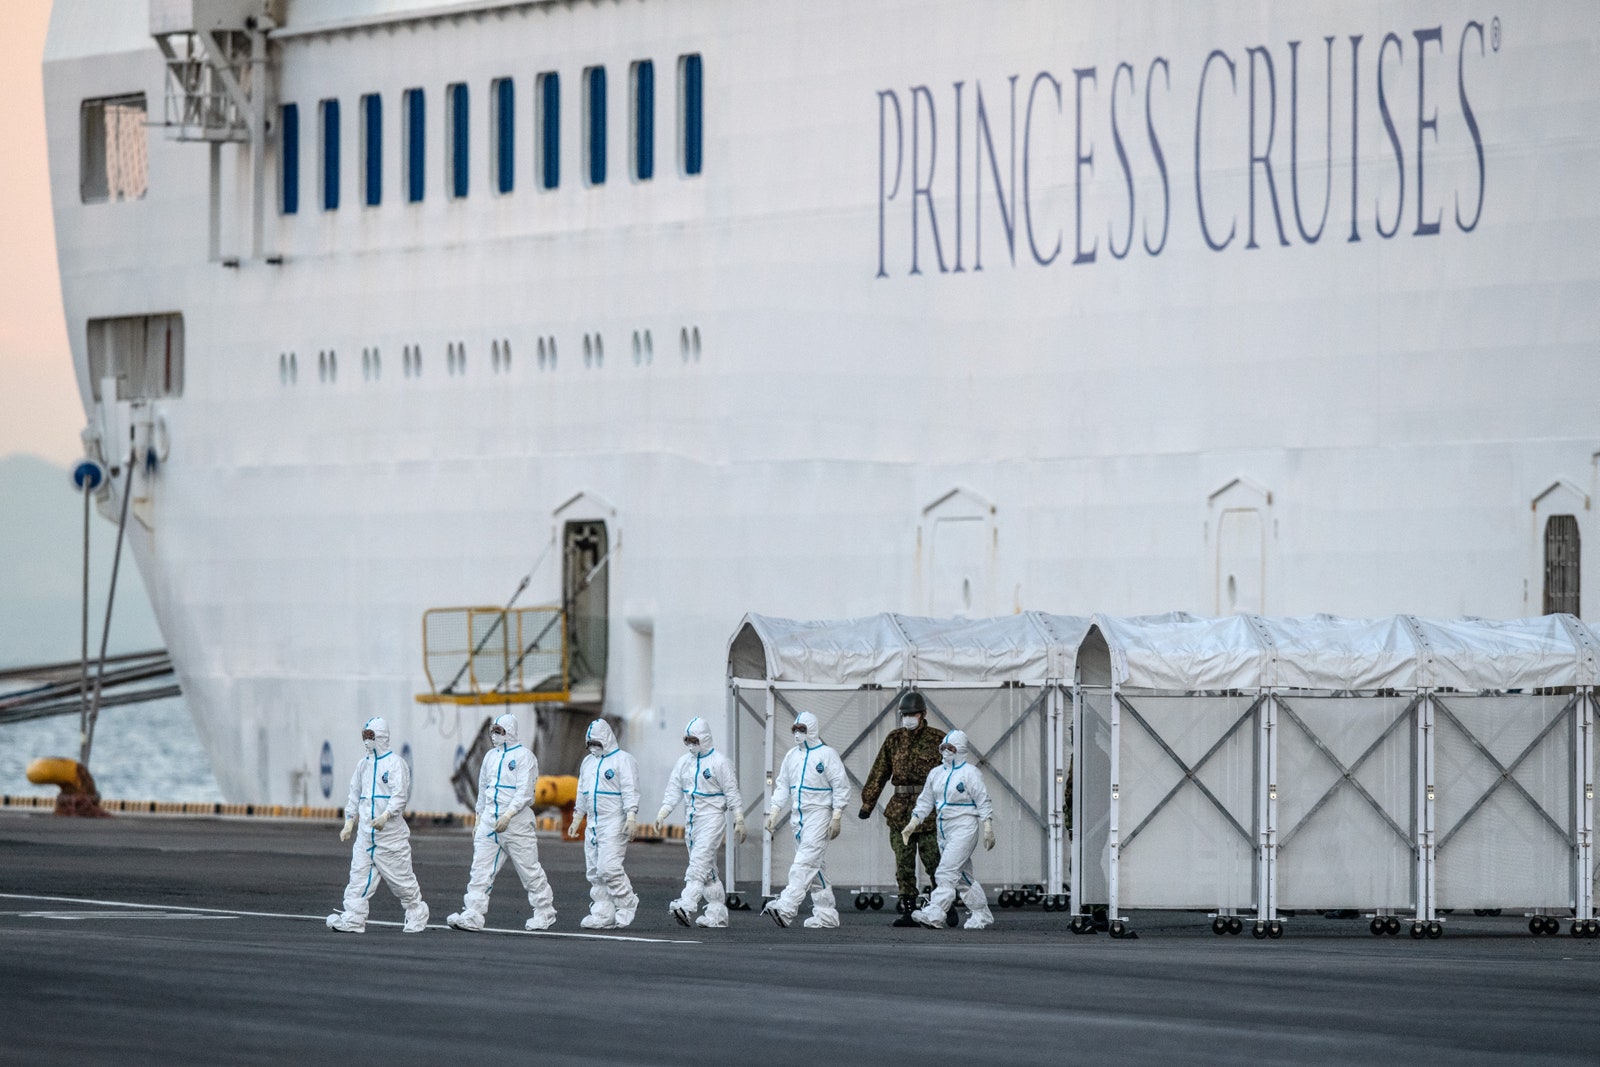 Пассажир лайнера Diamond Princess рассказал как переносит коронавирус